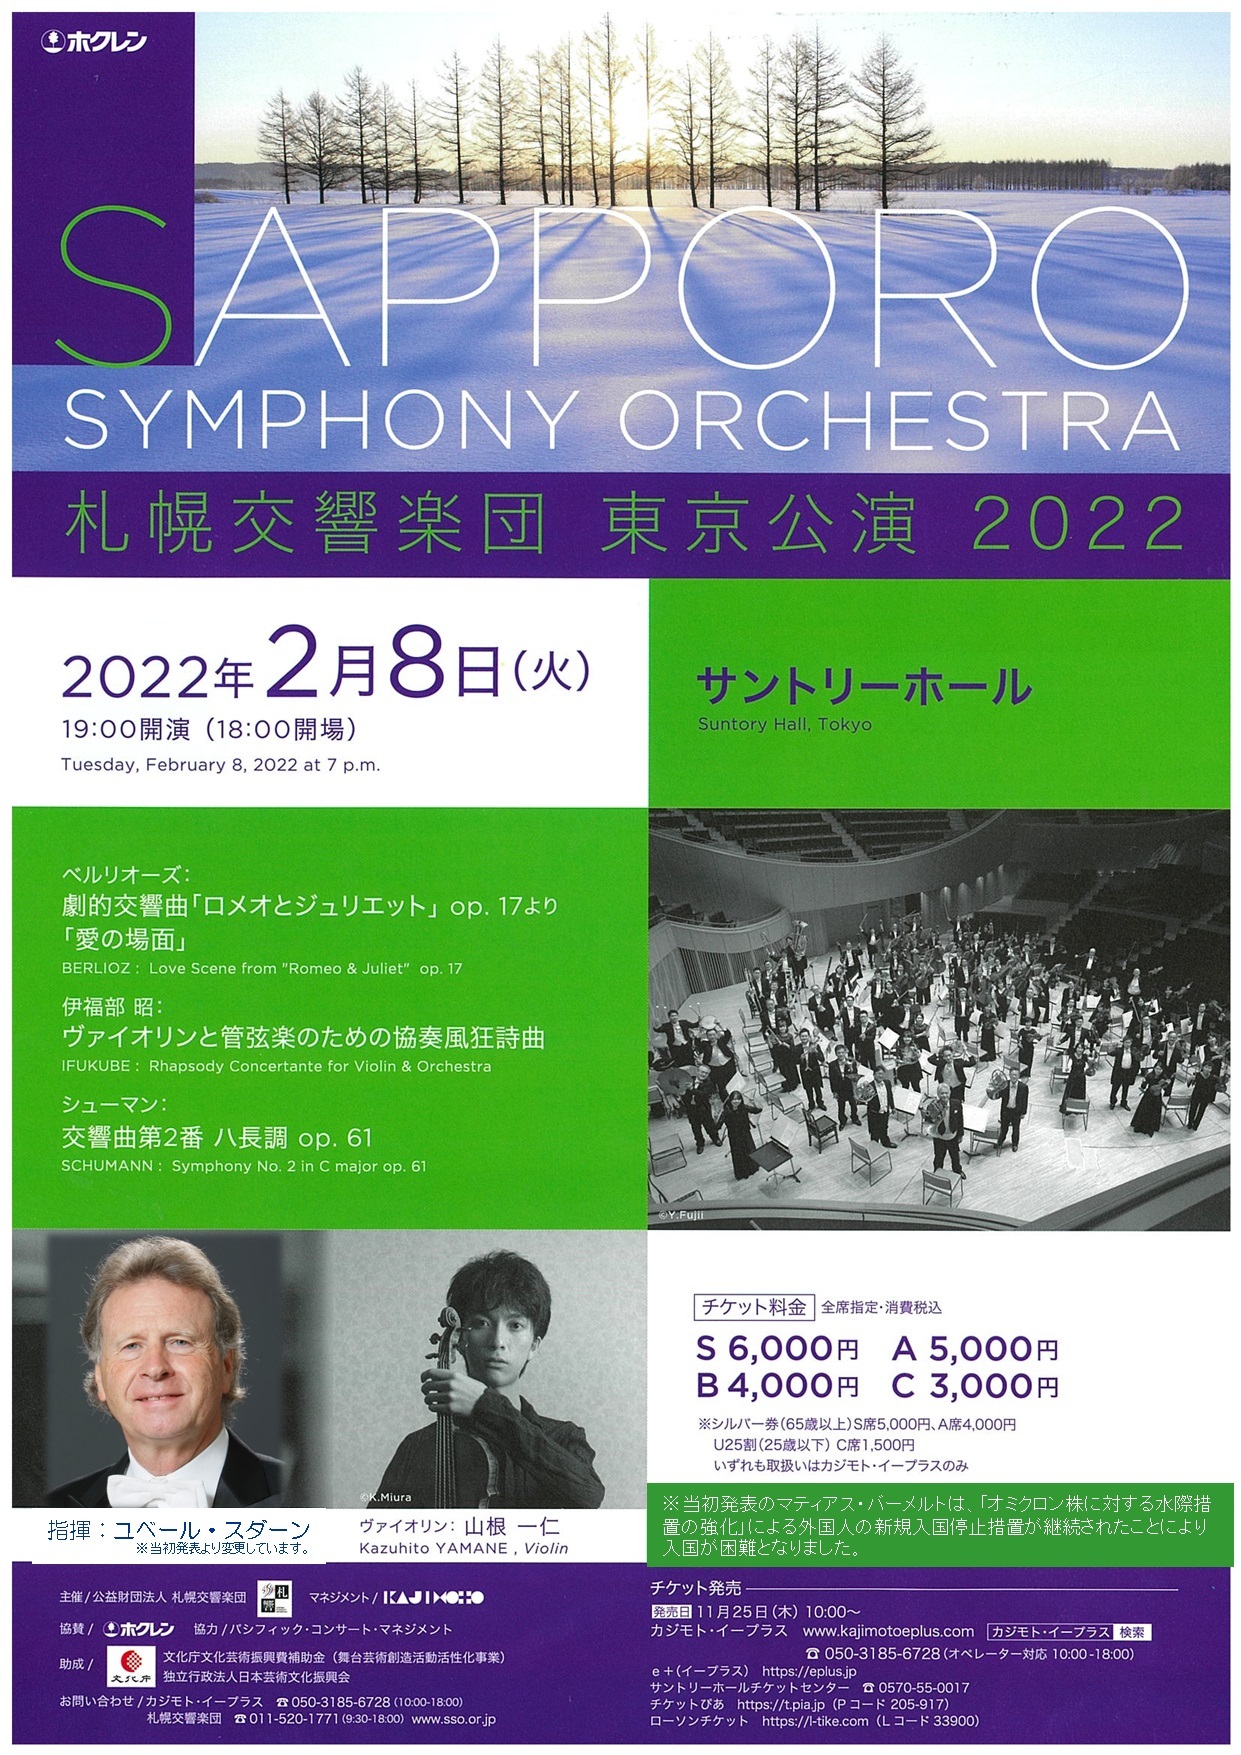 【当日券】2月8日『札響東京公演2022』 当日券販売とご来場の皆様へ